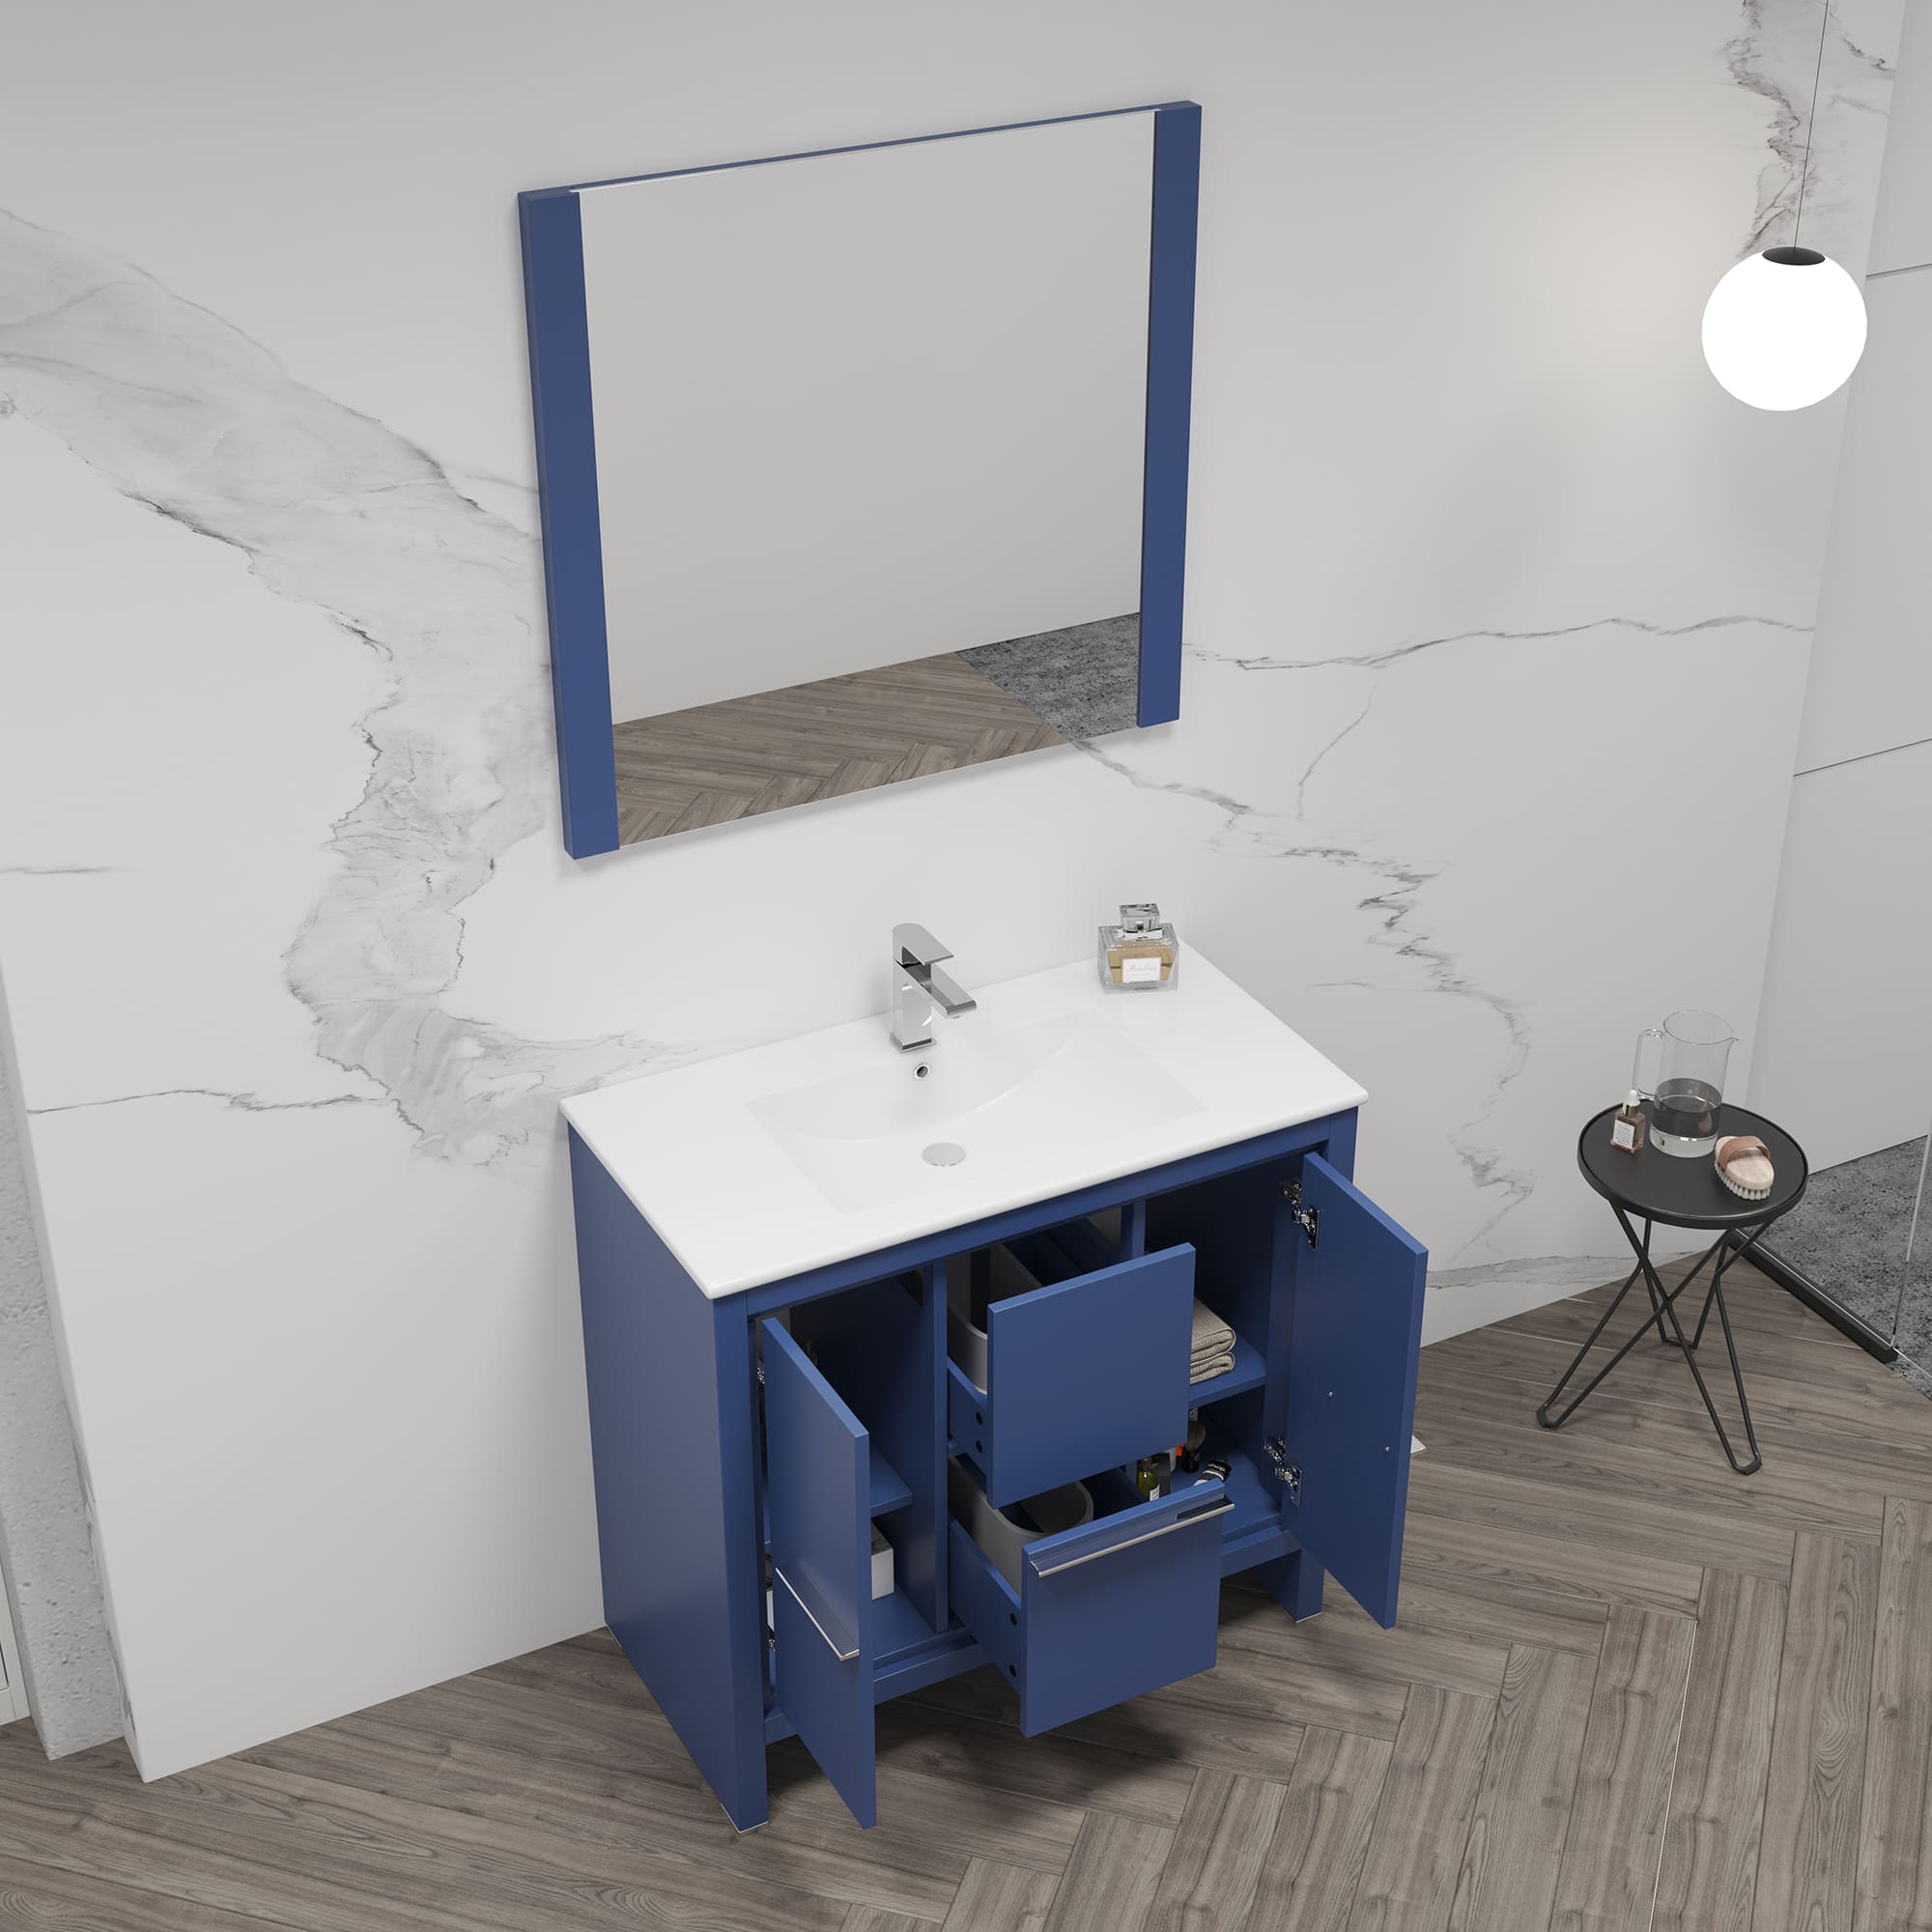 Milan 36" Bathroom Vanity  #size_36"  #color_navy blue #countertop_ceramic